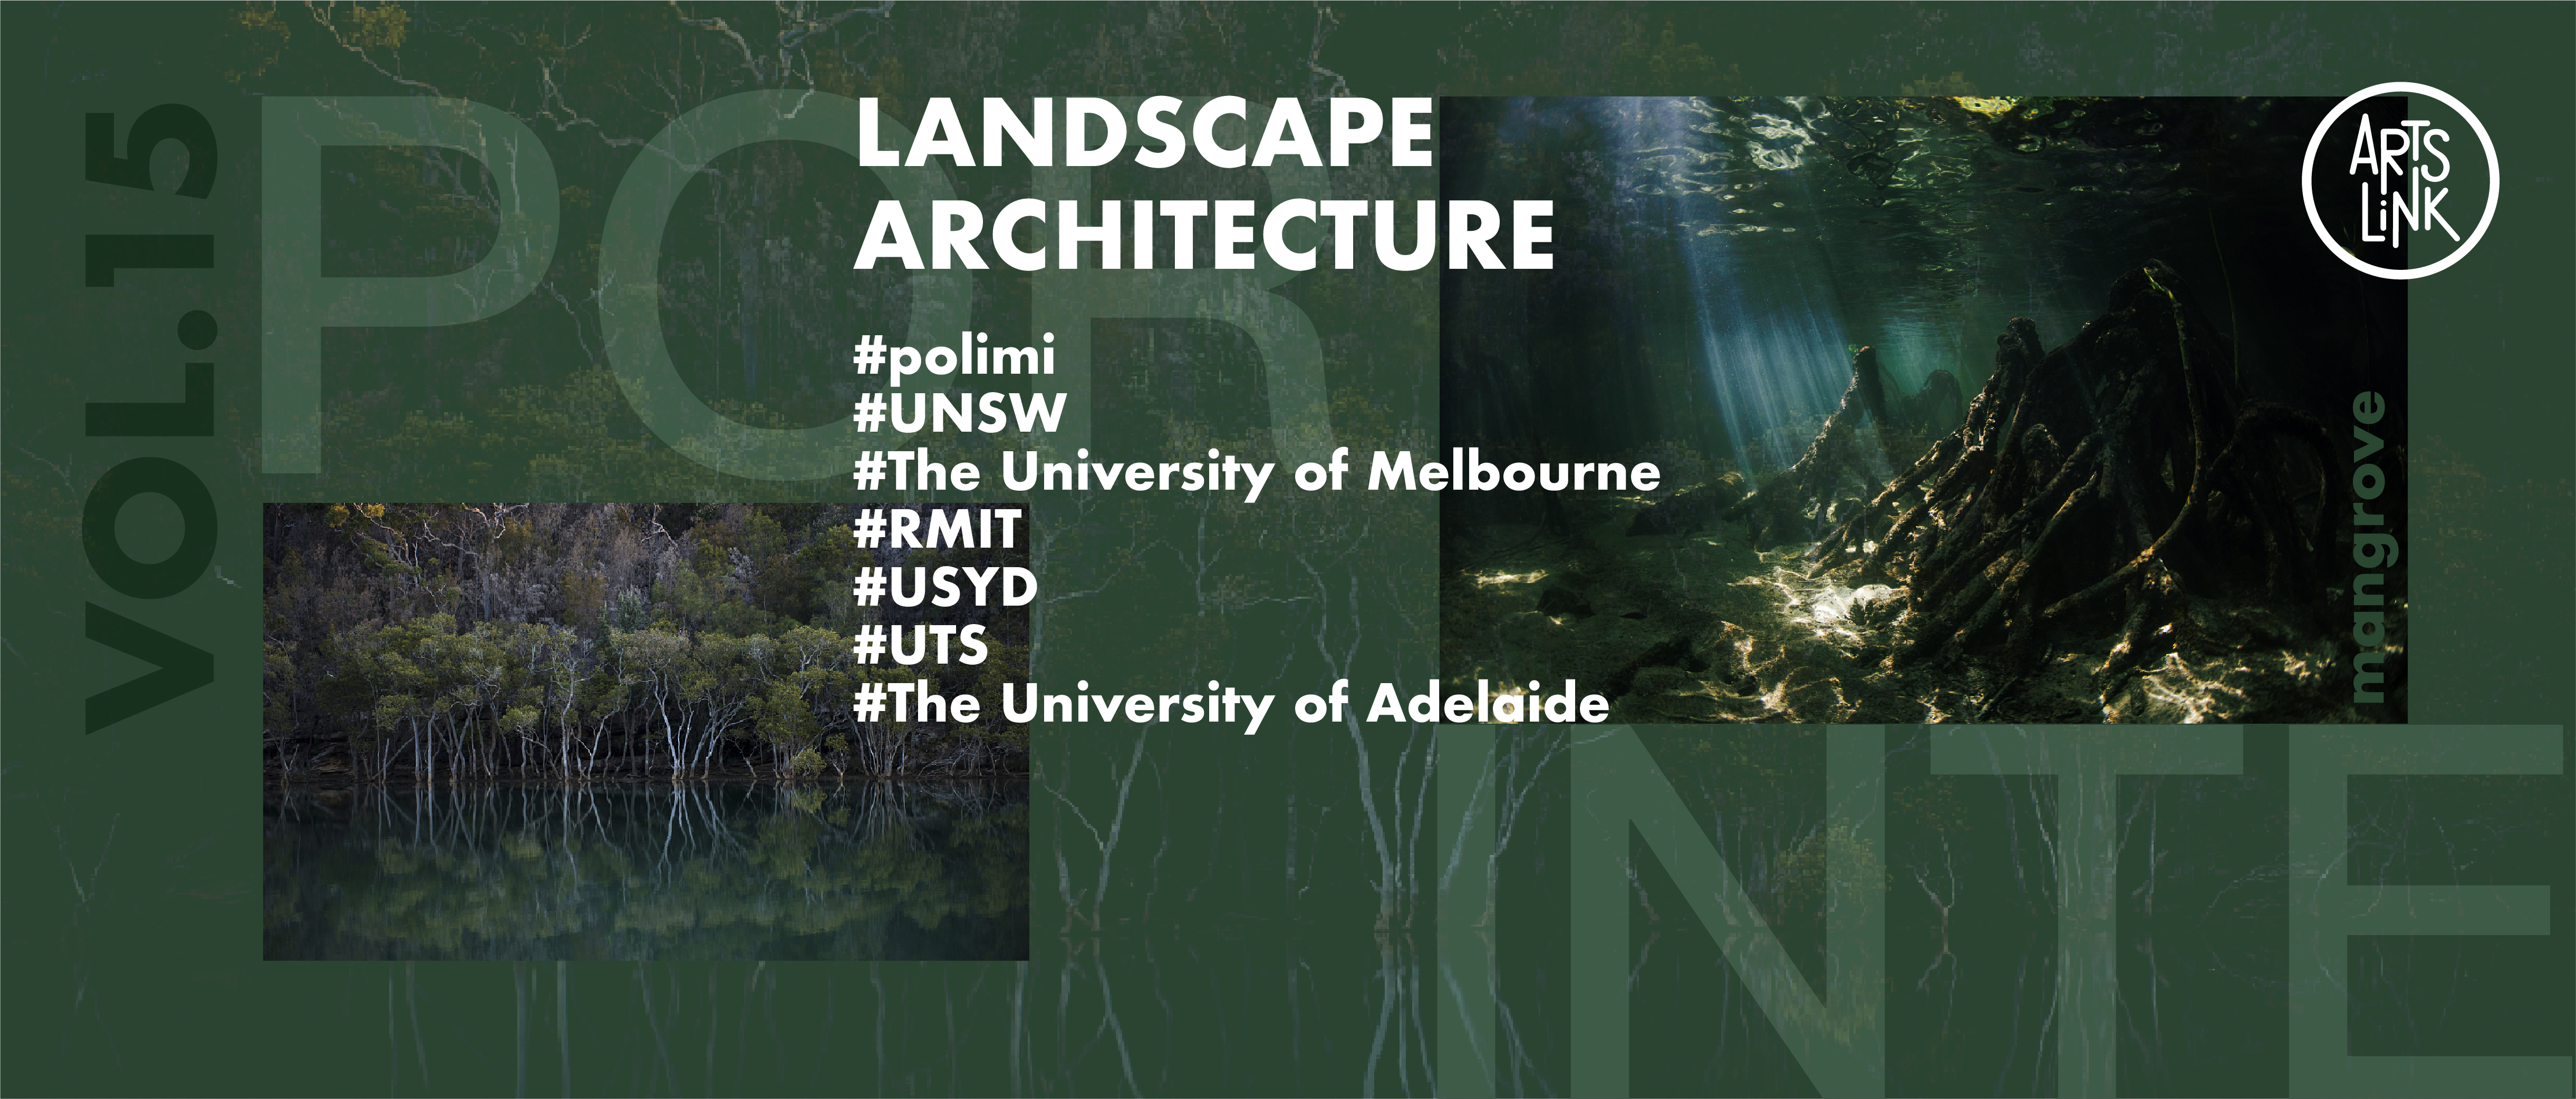 狂揽米理、新南威尔士、墨尔本大学等7所名校景观建筑offer，做红树林生态修复